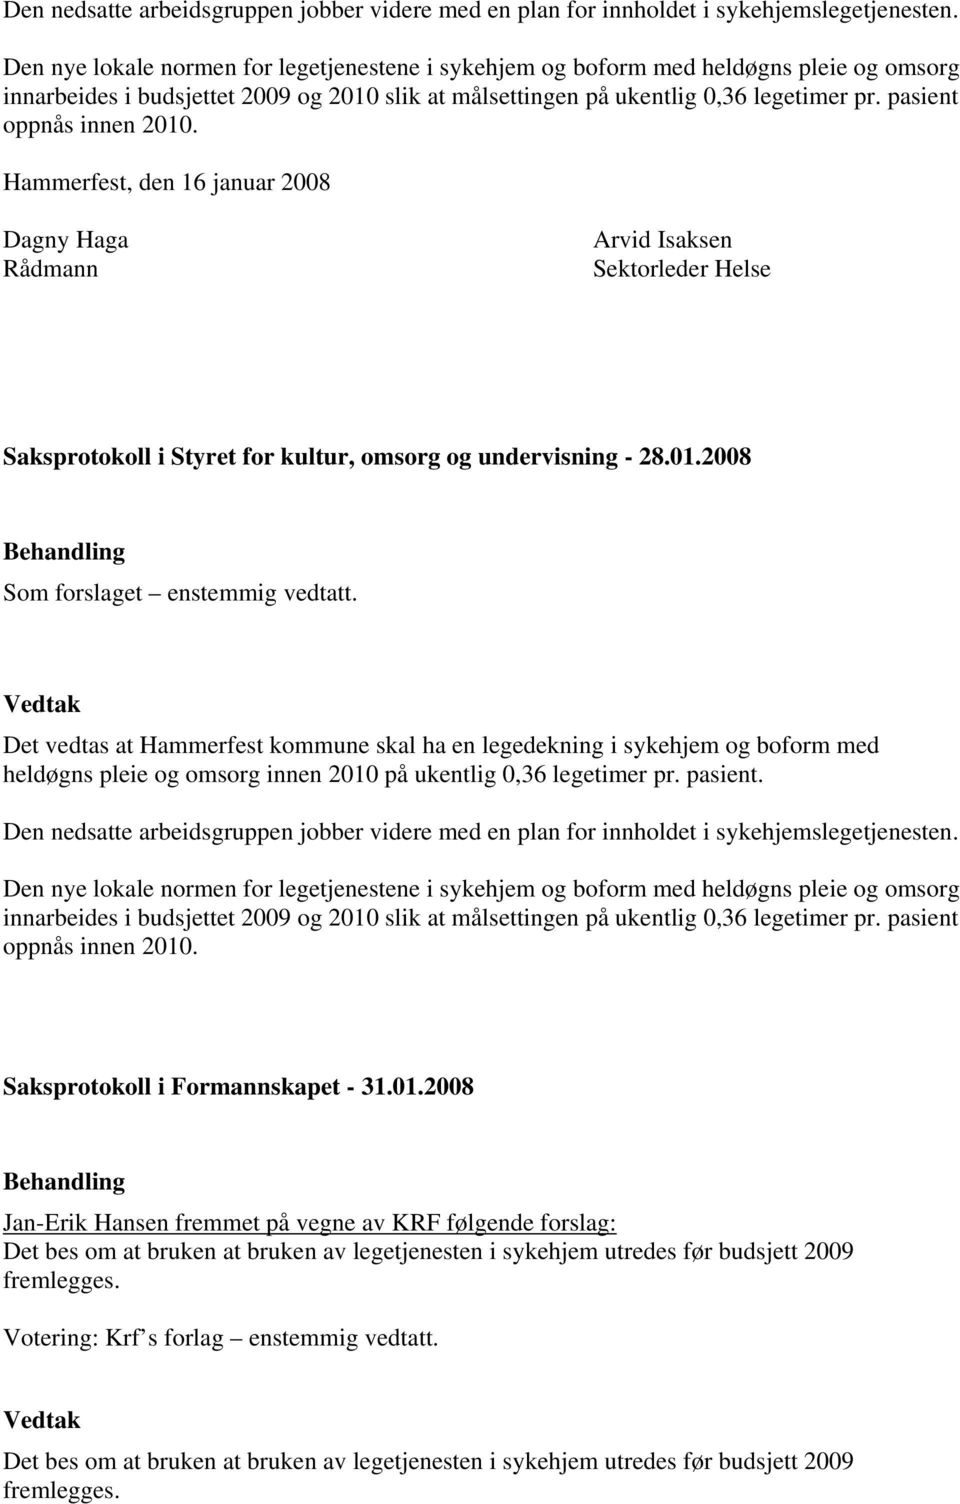 pasient oppnås innen 2010. Hammerfest, den 16 januar 2008 Dagny Haga Rådmann Arvid Isaksen Sektorleder Helse Saksprotokoll i Styret for kultur, omsorg og undervisning - 28.01.2008 Som forslaget enstemmig vedtatt.